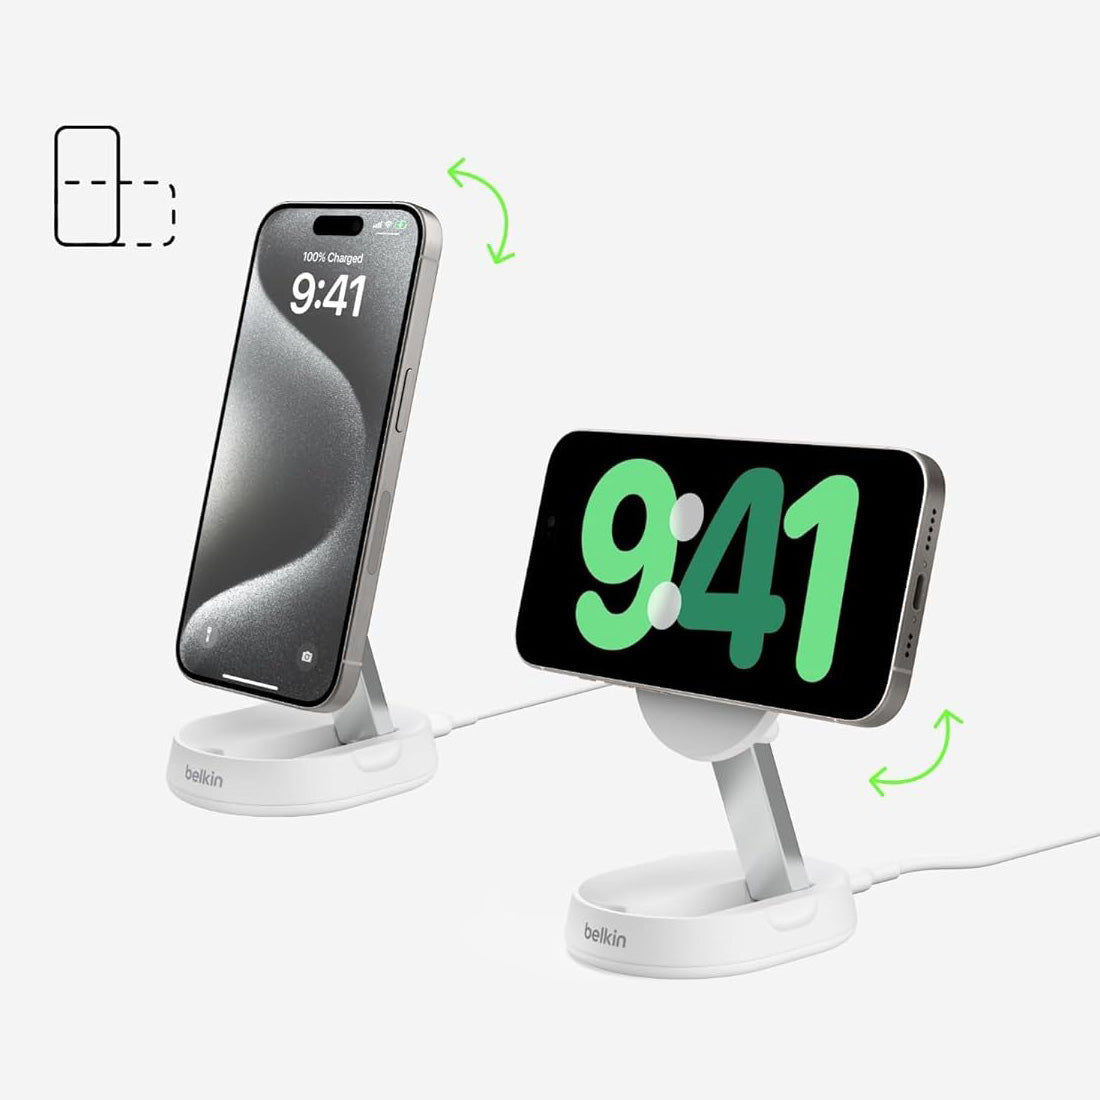 Drahtloses Ladegerät Belkin Boost Pro Convertible Qi2 15W WIA008 für iPhone mit MagSafe + PSU, Weiß